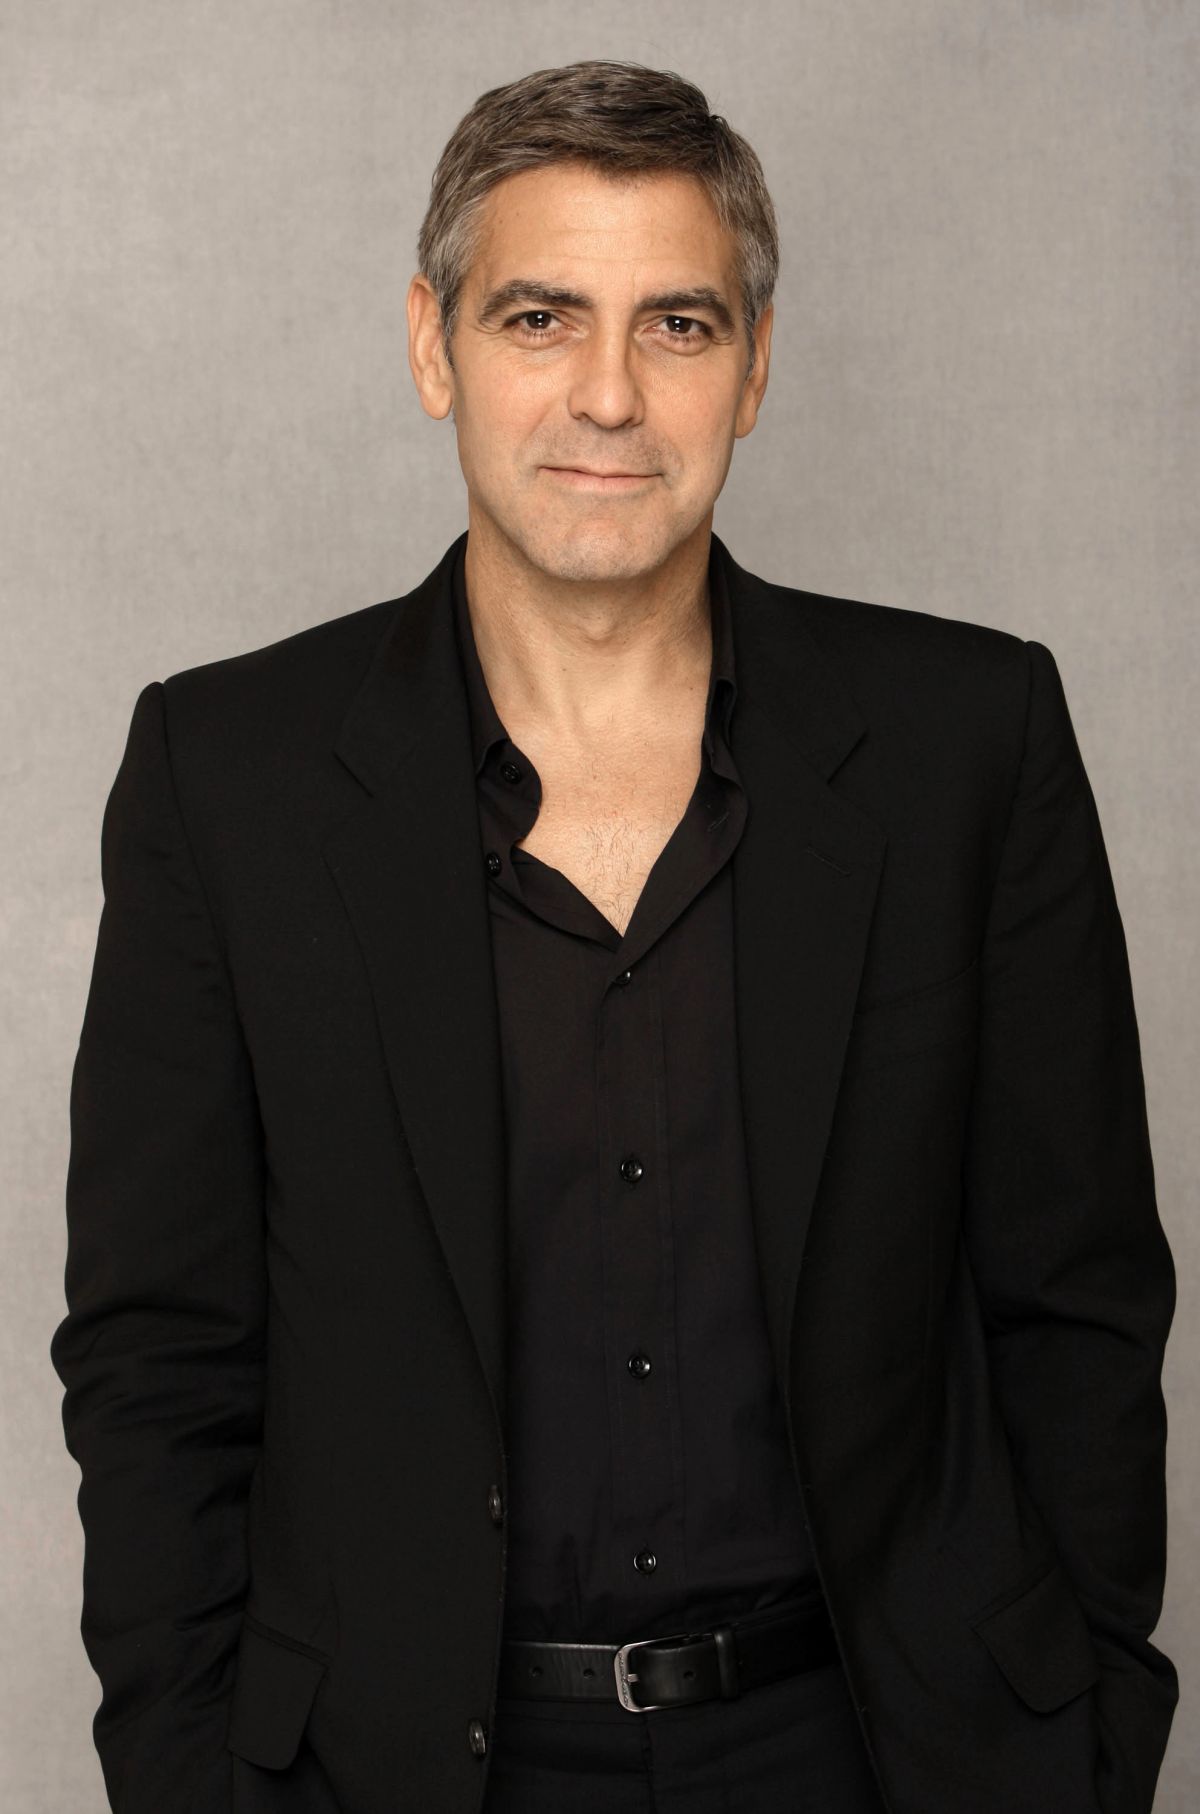 George Clooney zasila obsadę "Downton Abbey"